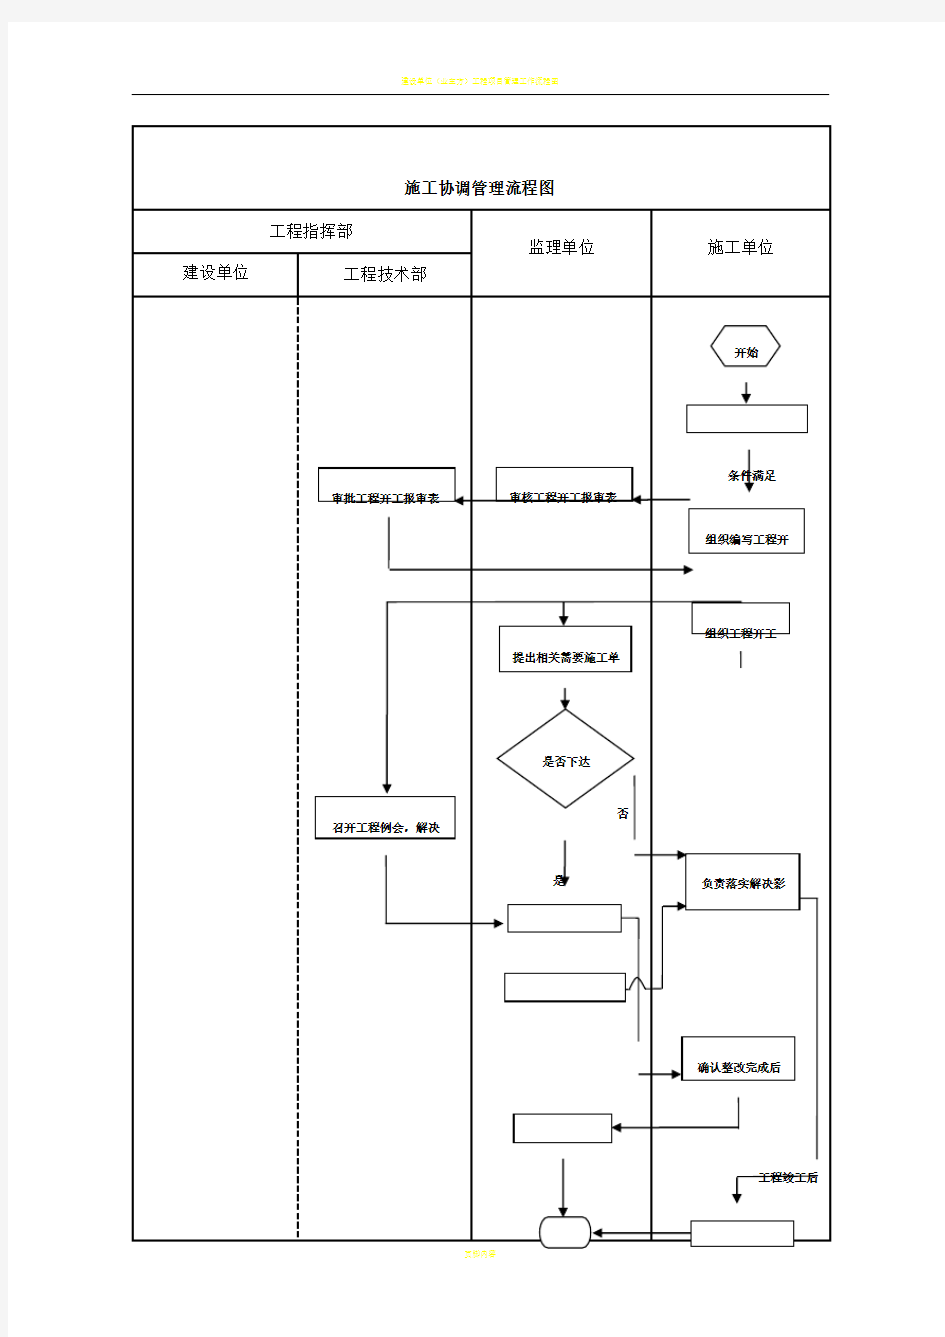 建设单位工程项目管理流程图